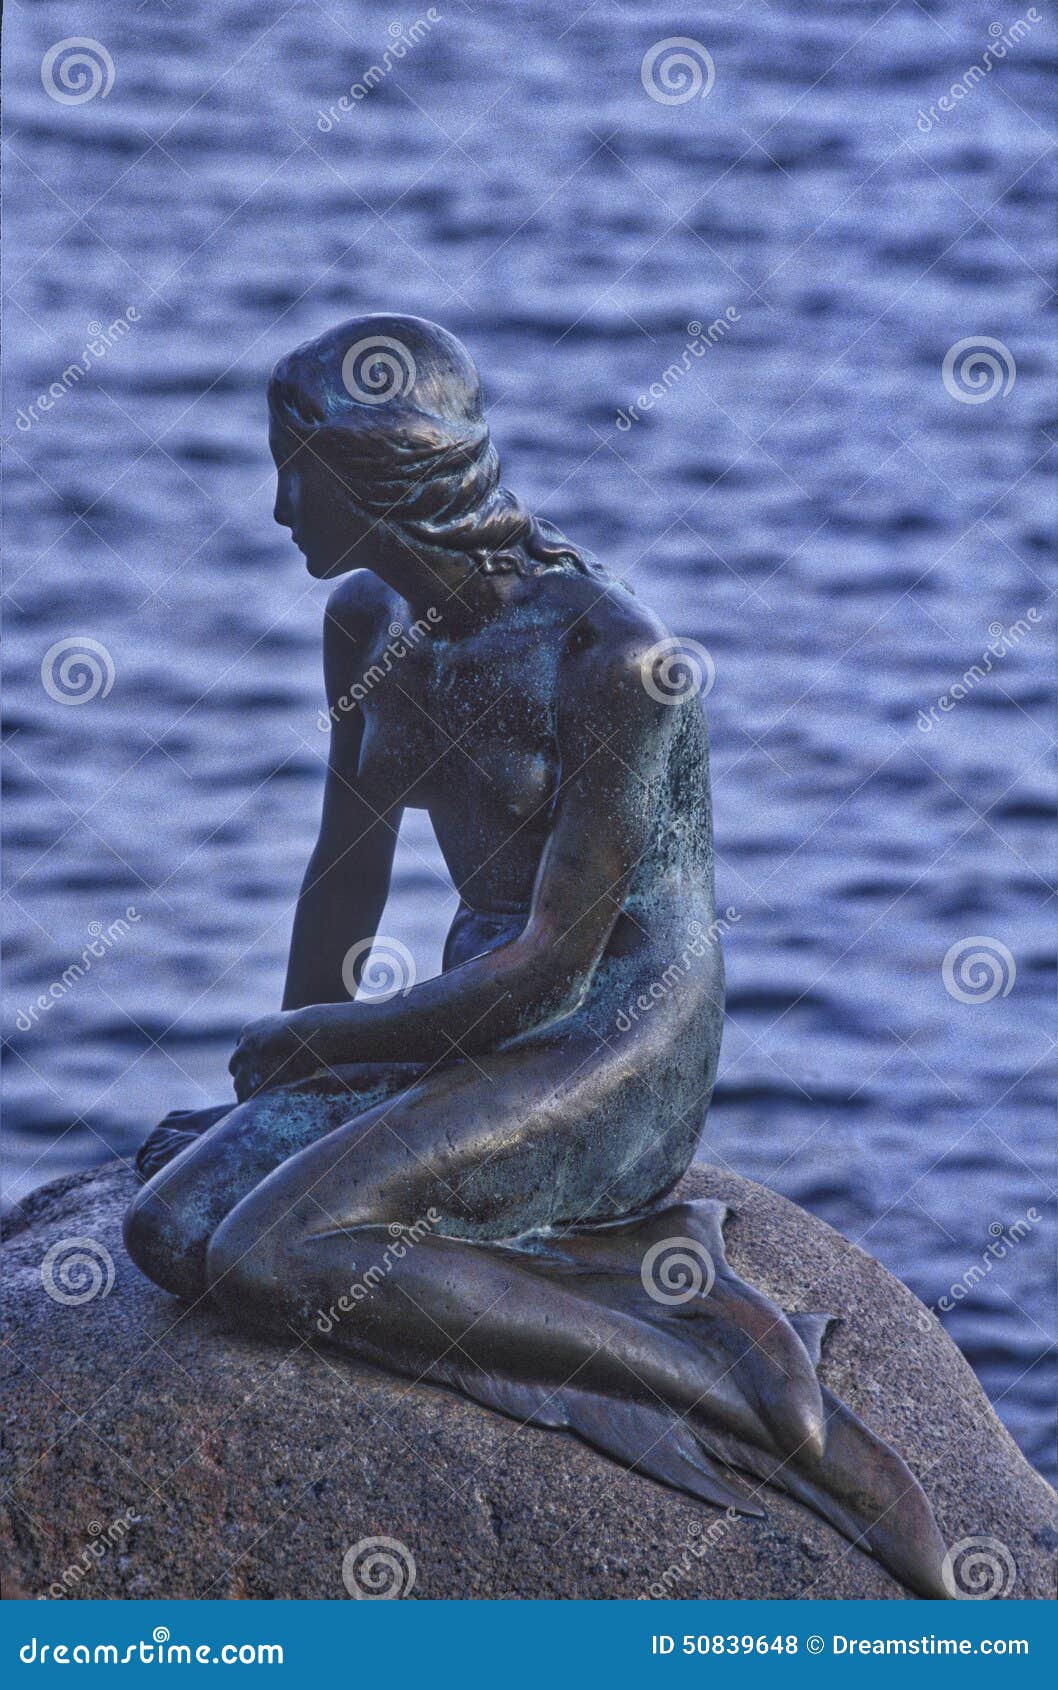 Little Mermaid (La Sirenetta) Editorial Stock Photo - Image of ...